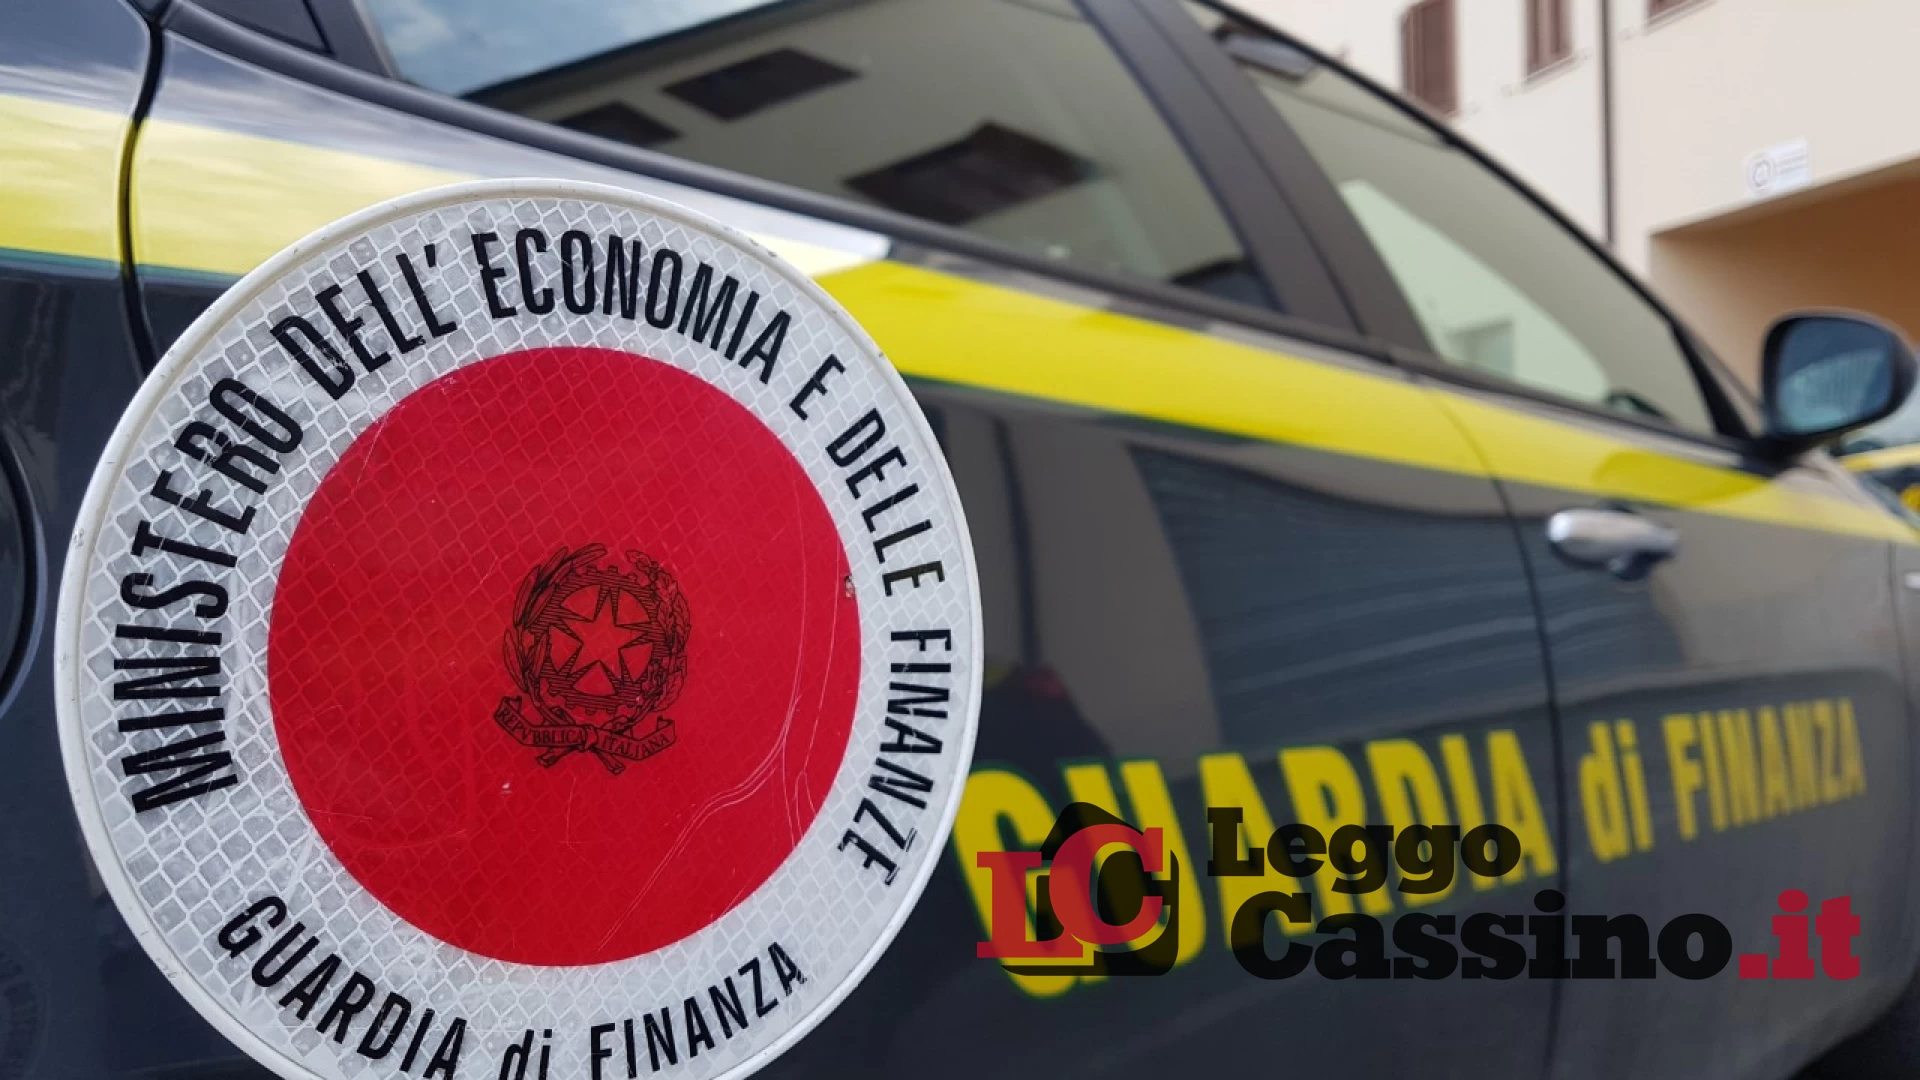 Appartamenti, auto e orologi: la GdF di Cassino sequestra beni per oltre un milione di euro